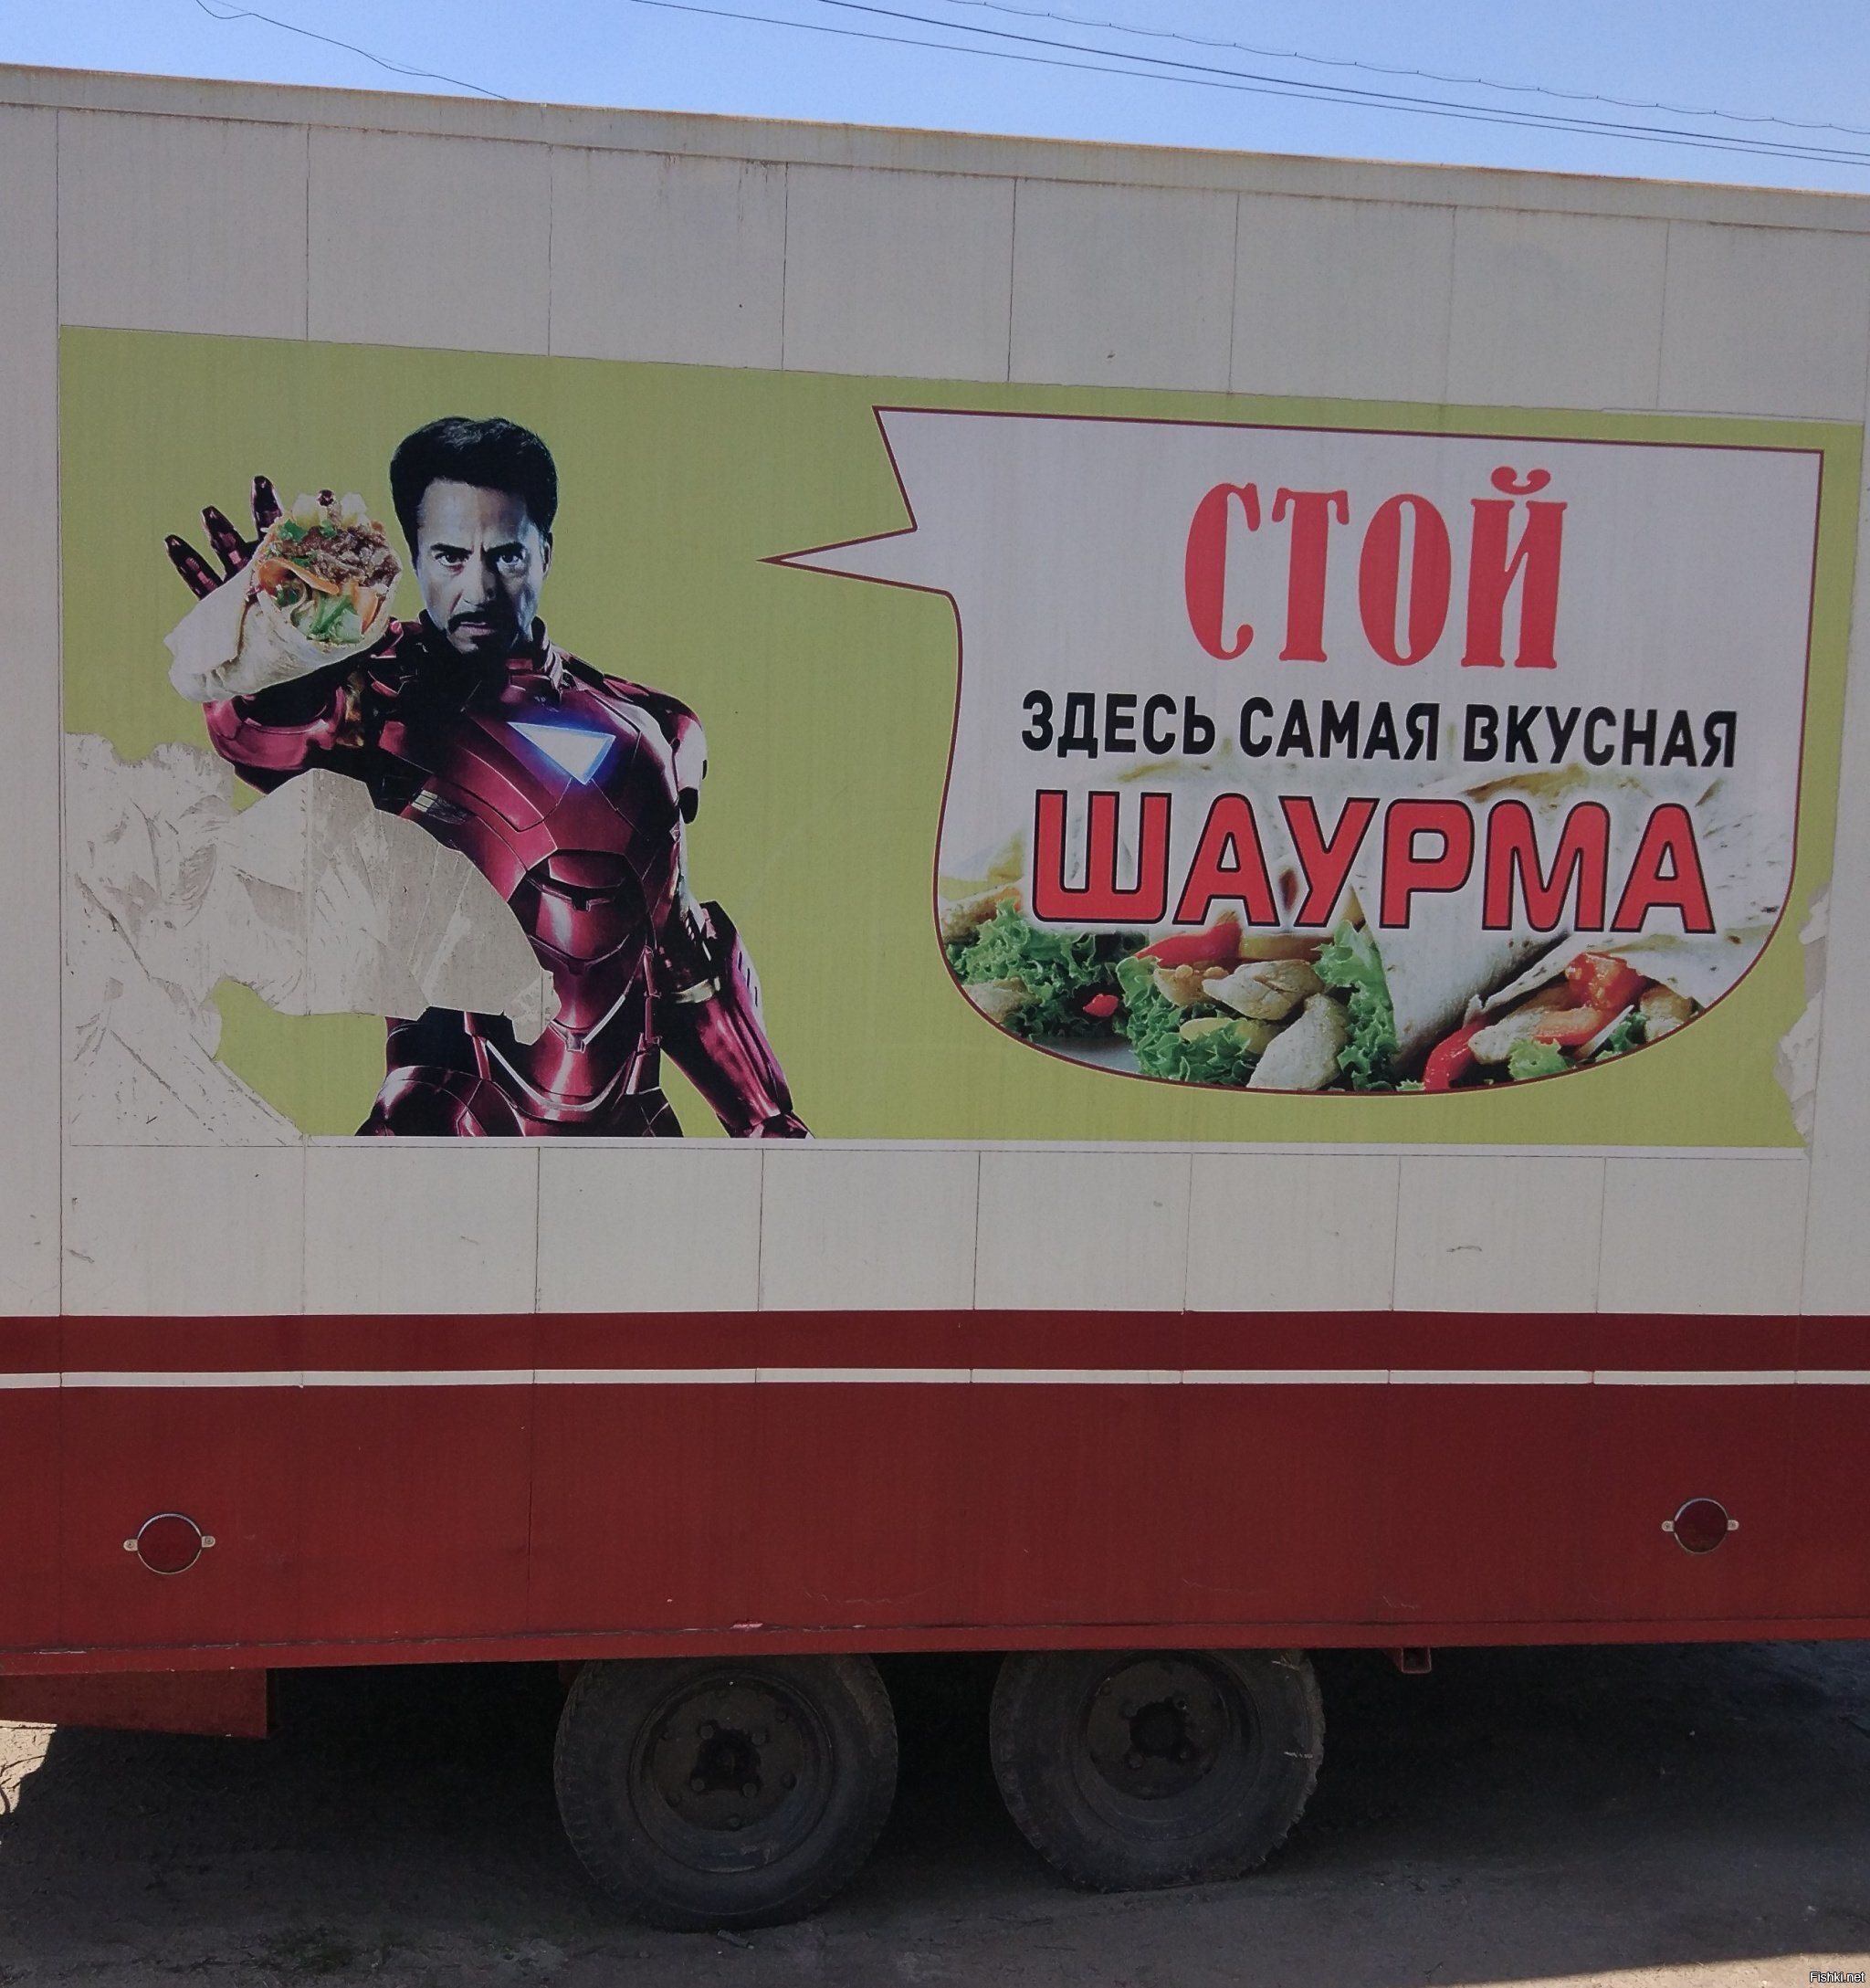 На майские праздники был в Мордовии и вот такую рекламку сфоткал)))